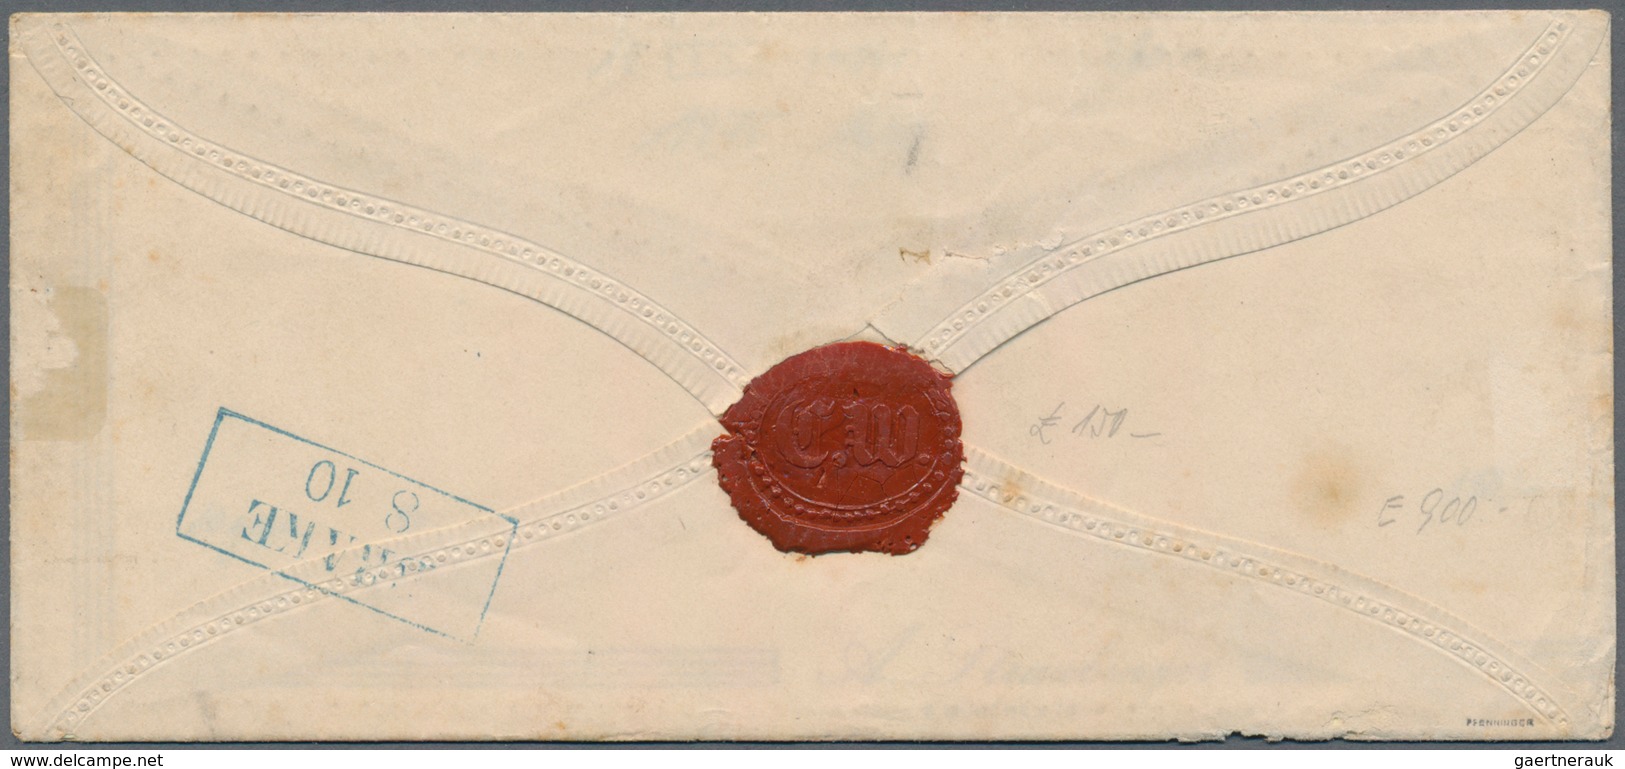 Oldenburg - Marken Und Briefe: 1852 1/30 Th Farbfrisch Vollrandig Auf Prägezierbrief, Blauer Rahmen - Oldenburg